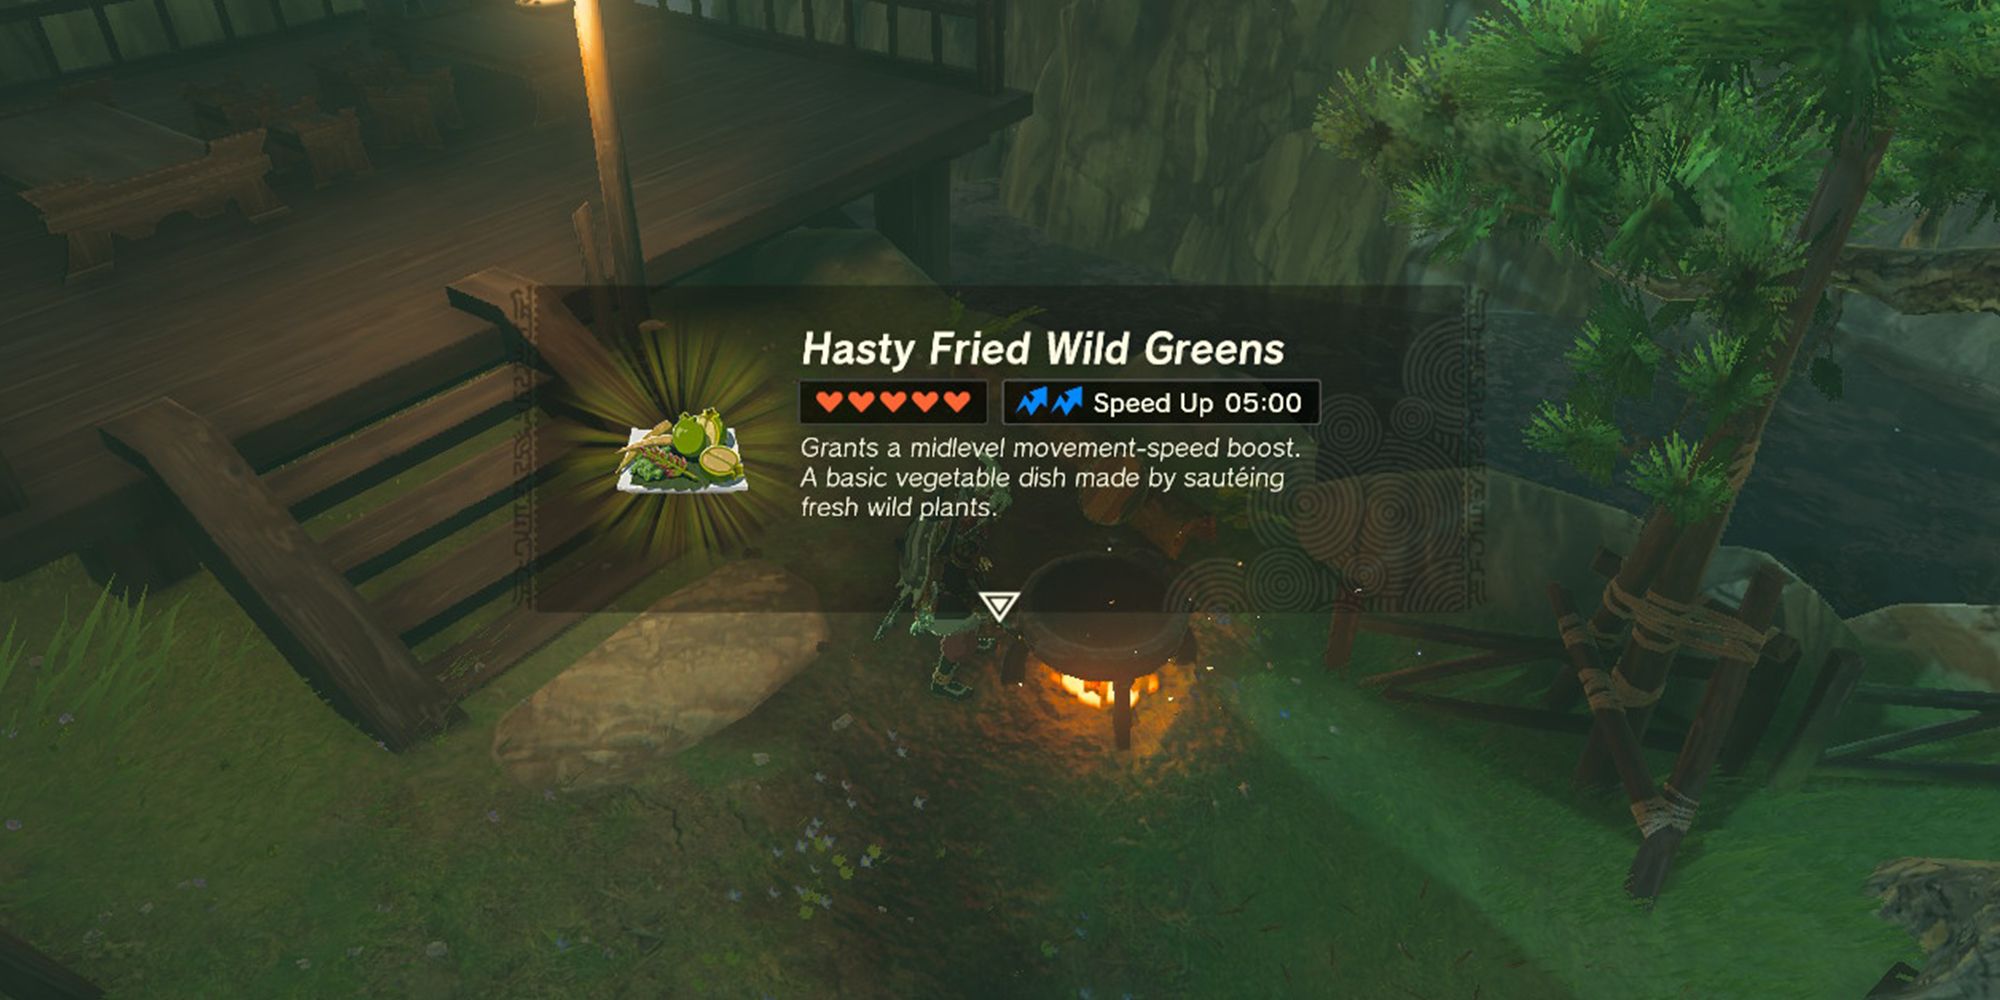 Hasty Fried Wild Greens